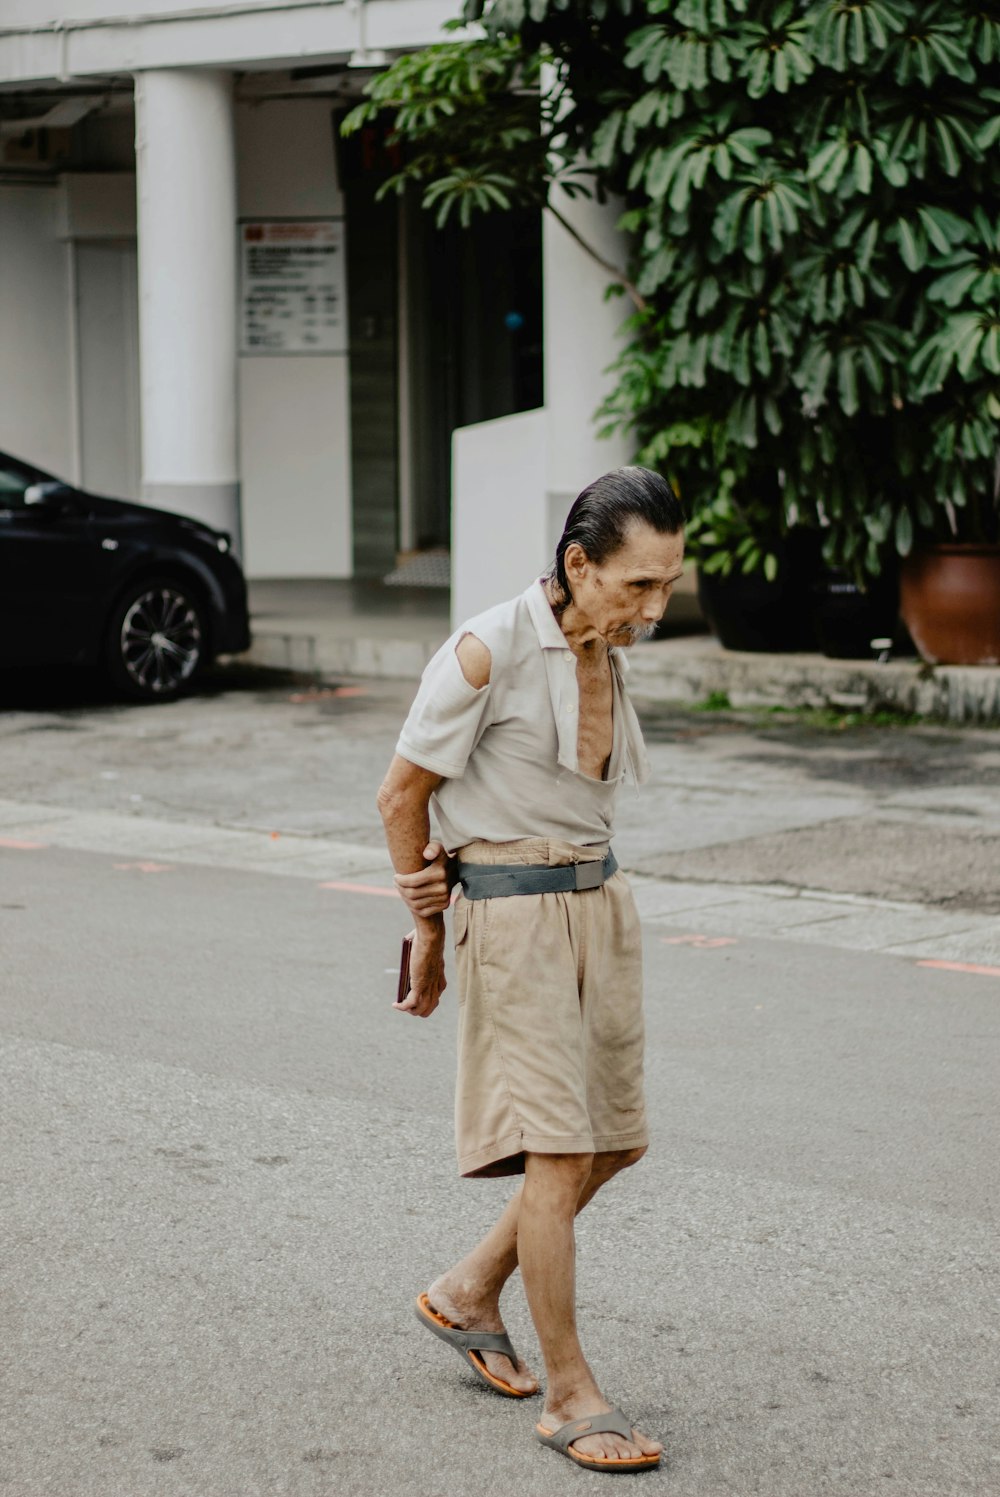 homme portant un short brun debout sur une route en béton